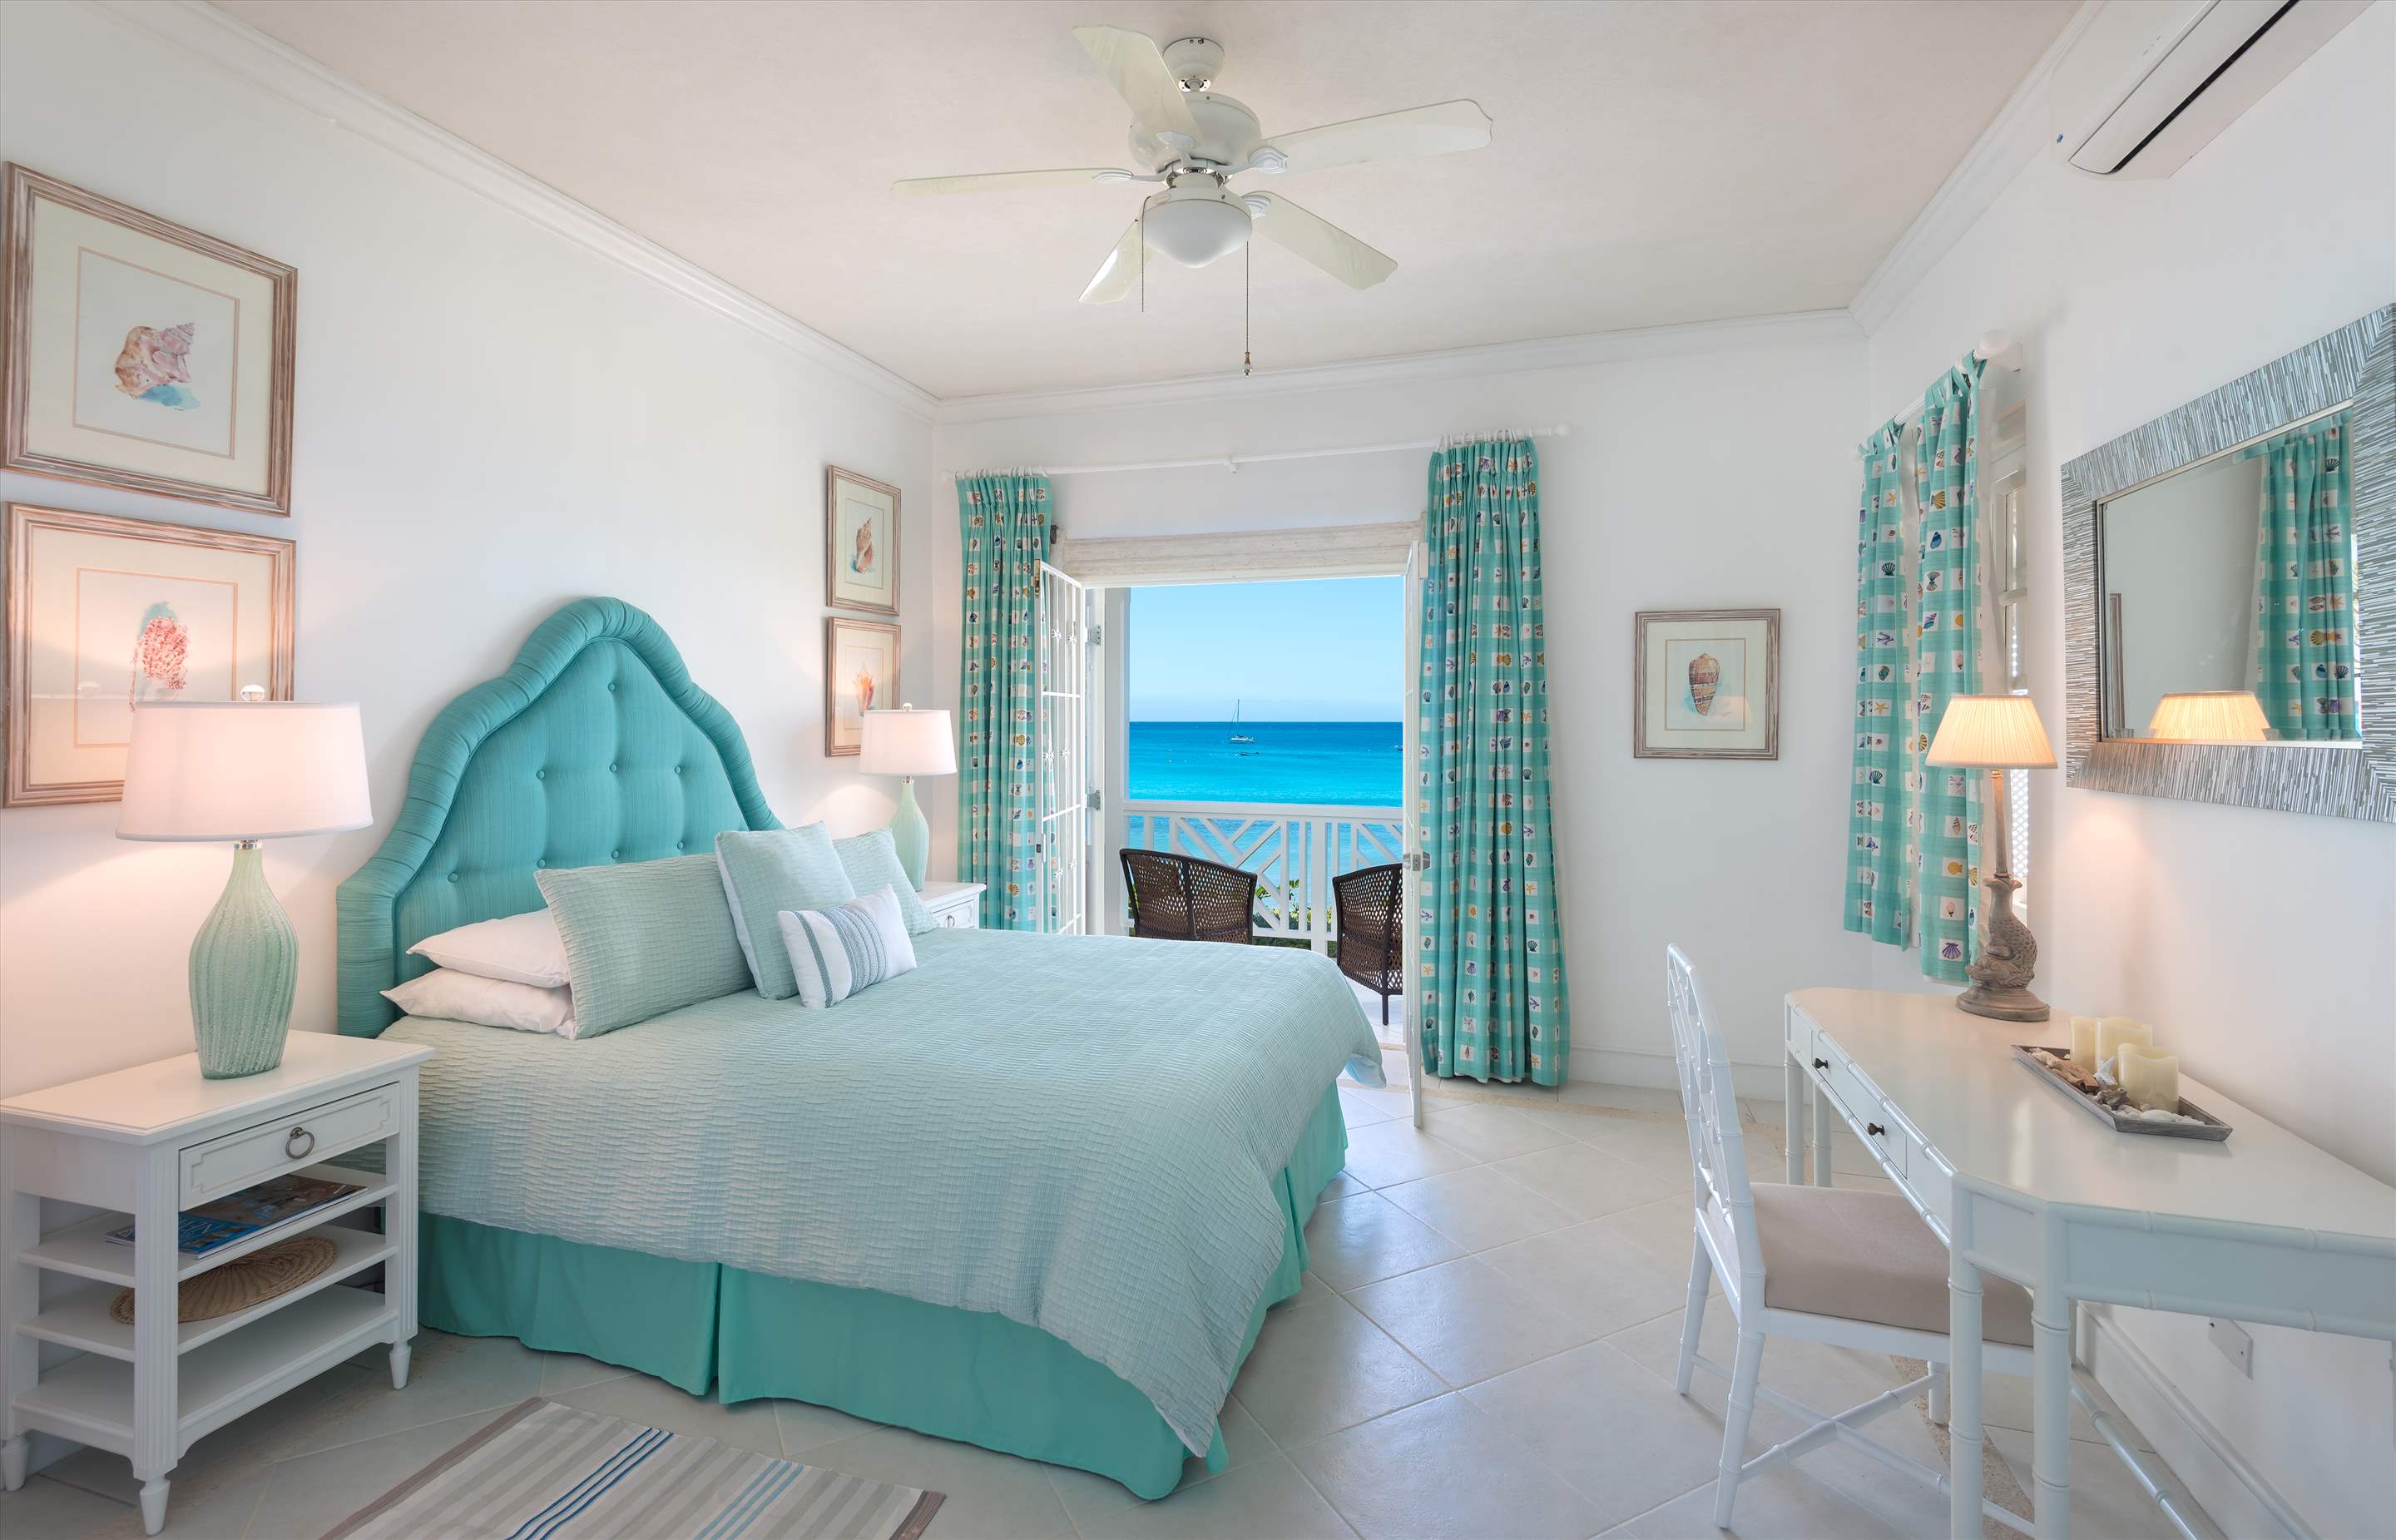 Fathom's End, 3 bedroom villa in St. James & West Coast, Barbados Photo #9